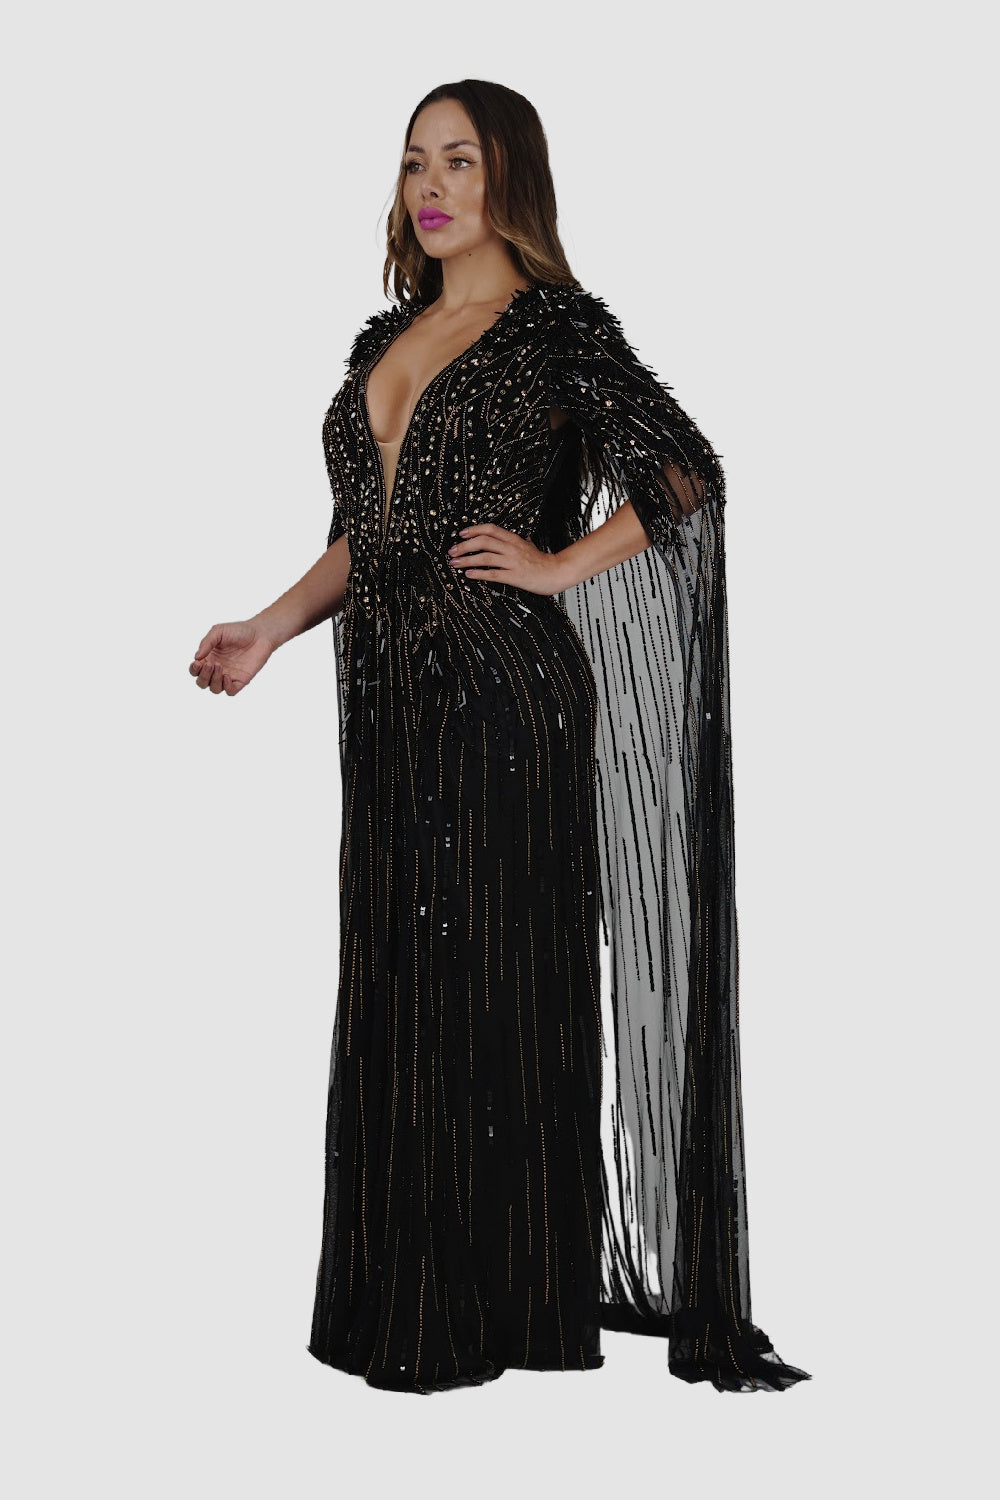 Diamond for Eden Black/Gold Cape Long Dress